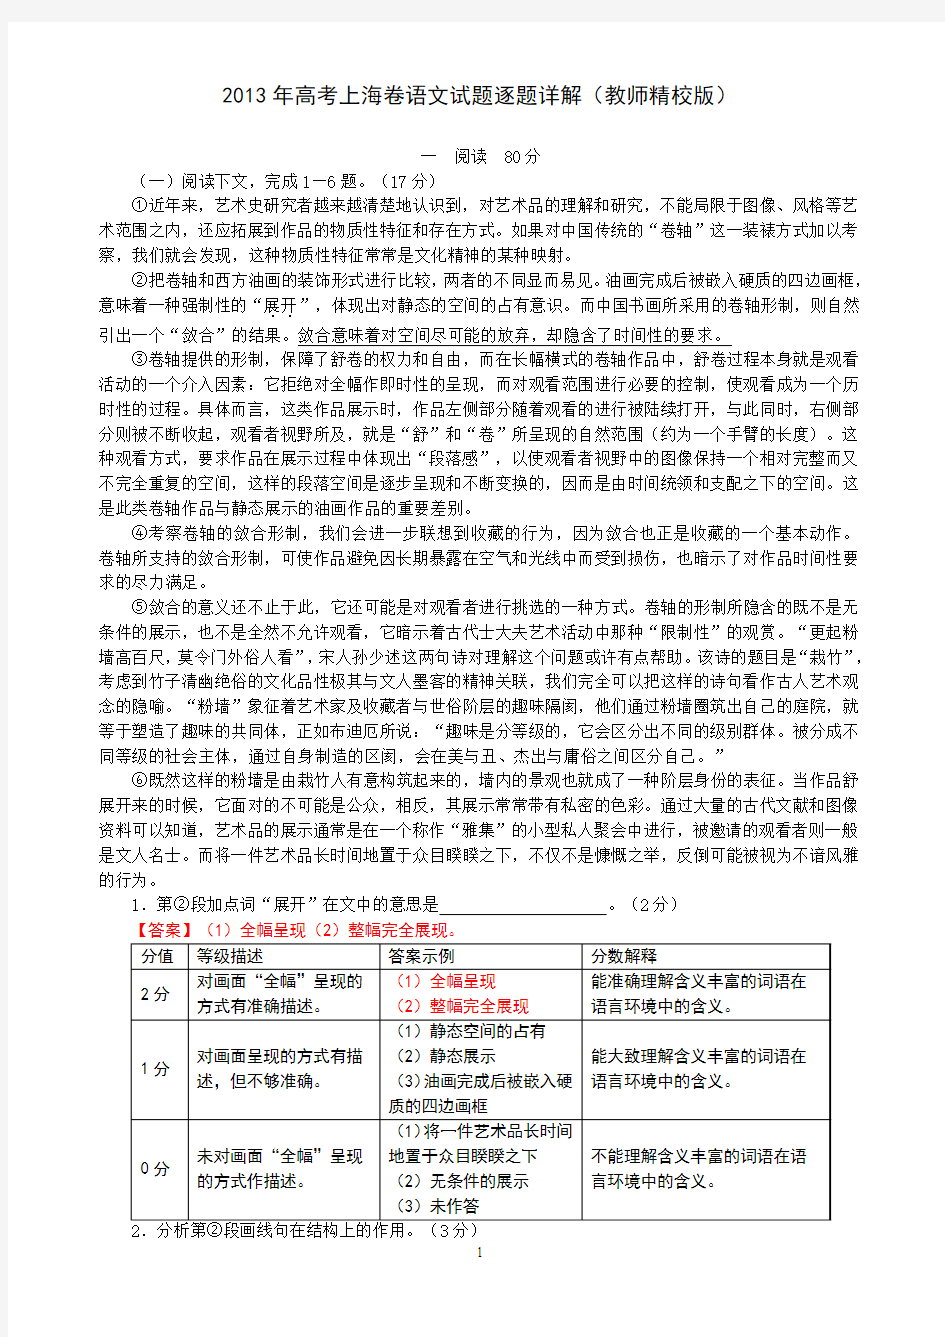 2013年高考上海卷语文试题逐题详解(教师精校版)